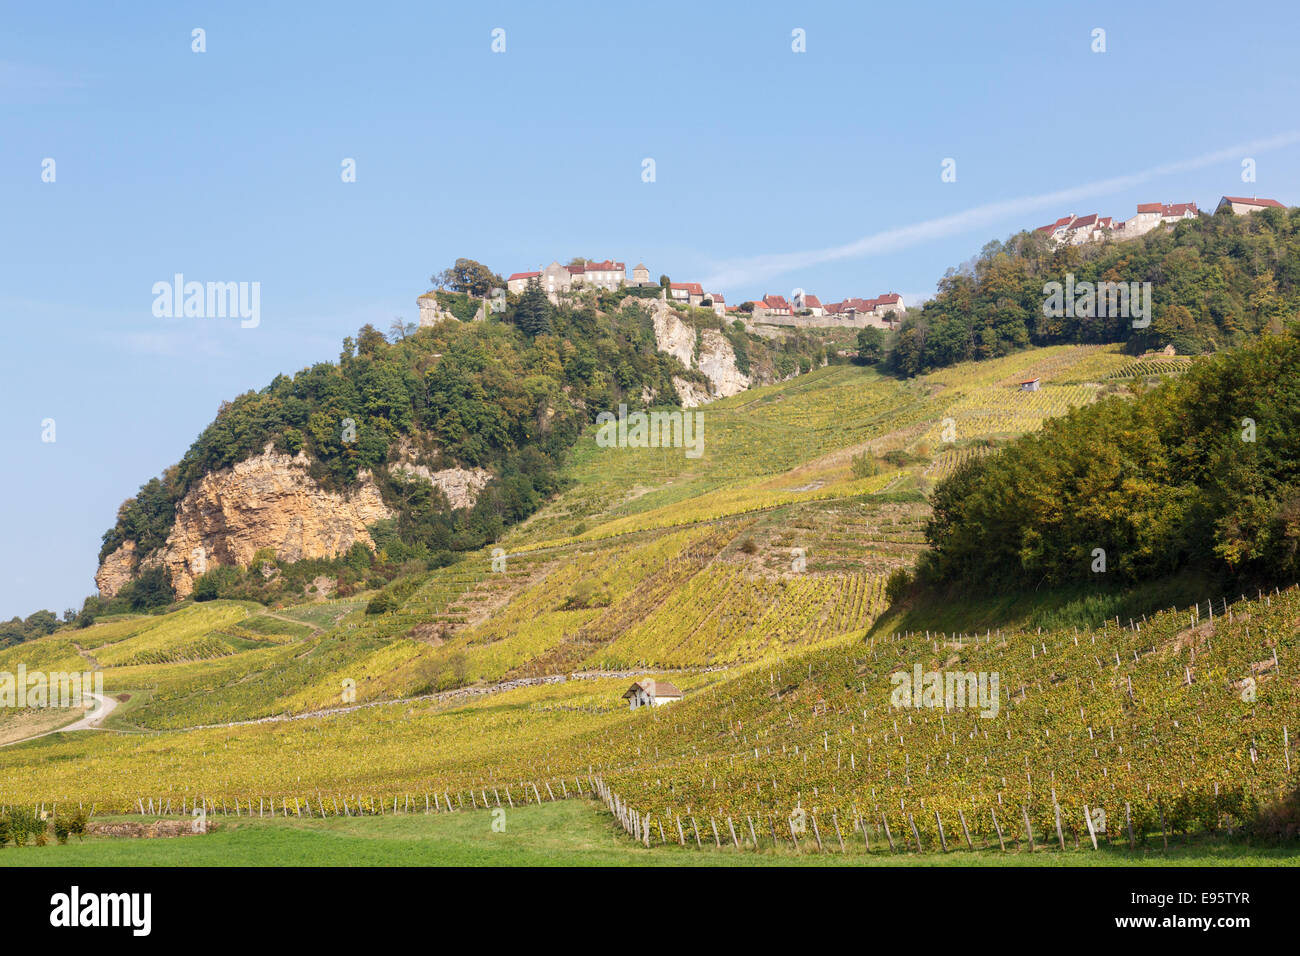 Vue de village perché au-dessus des vignes à Jura région viticole. Château Chalon, Jura, Franche-Comté, France, Europe Banque D'Images